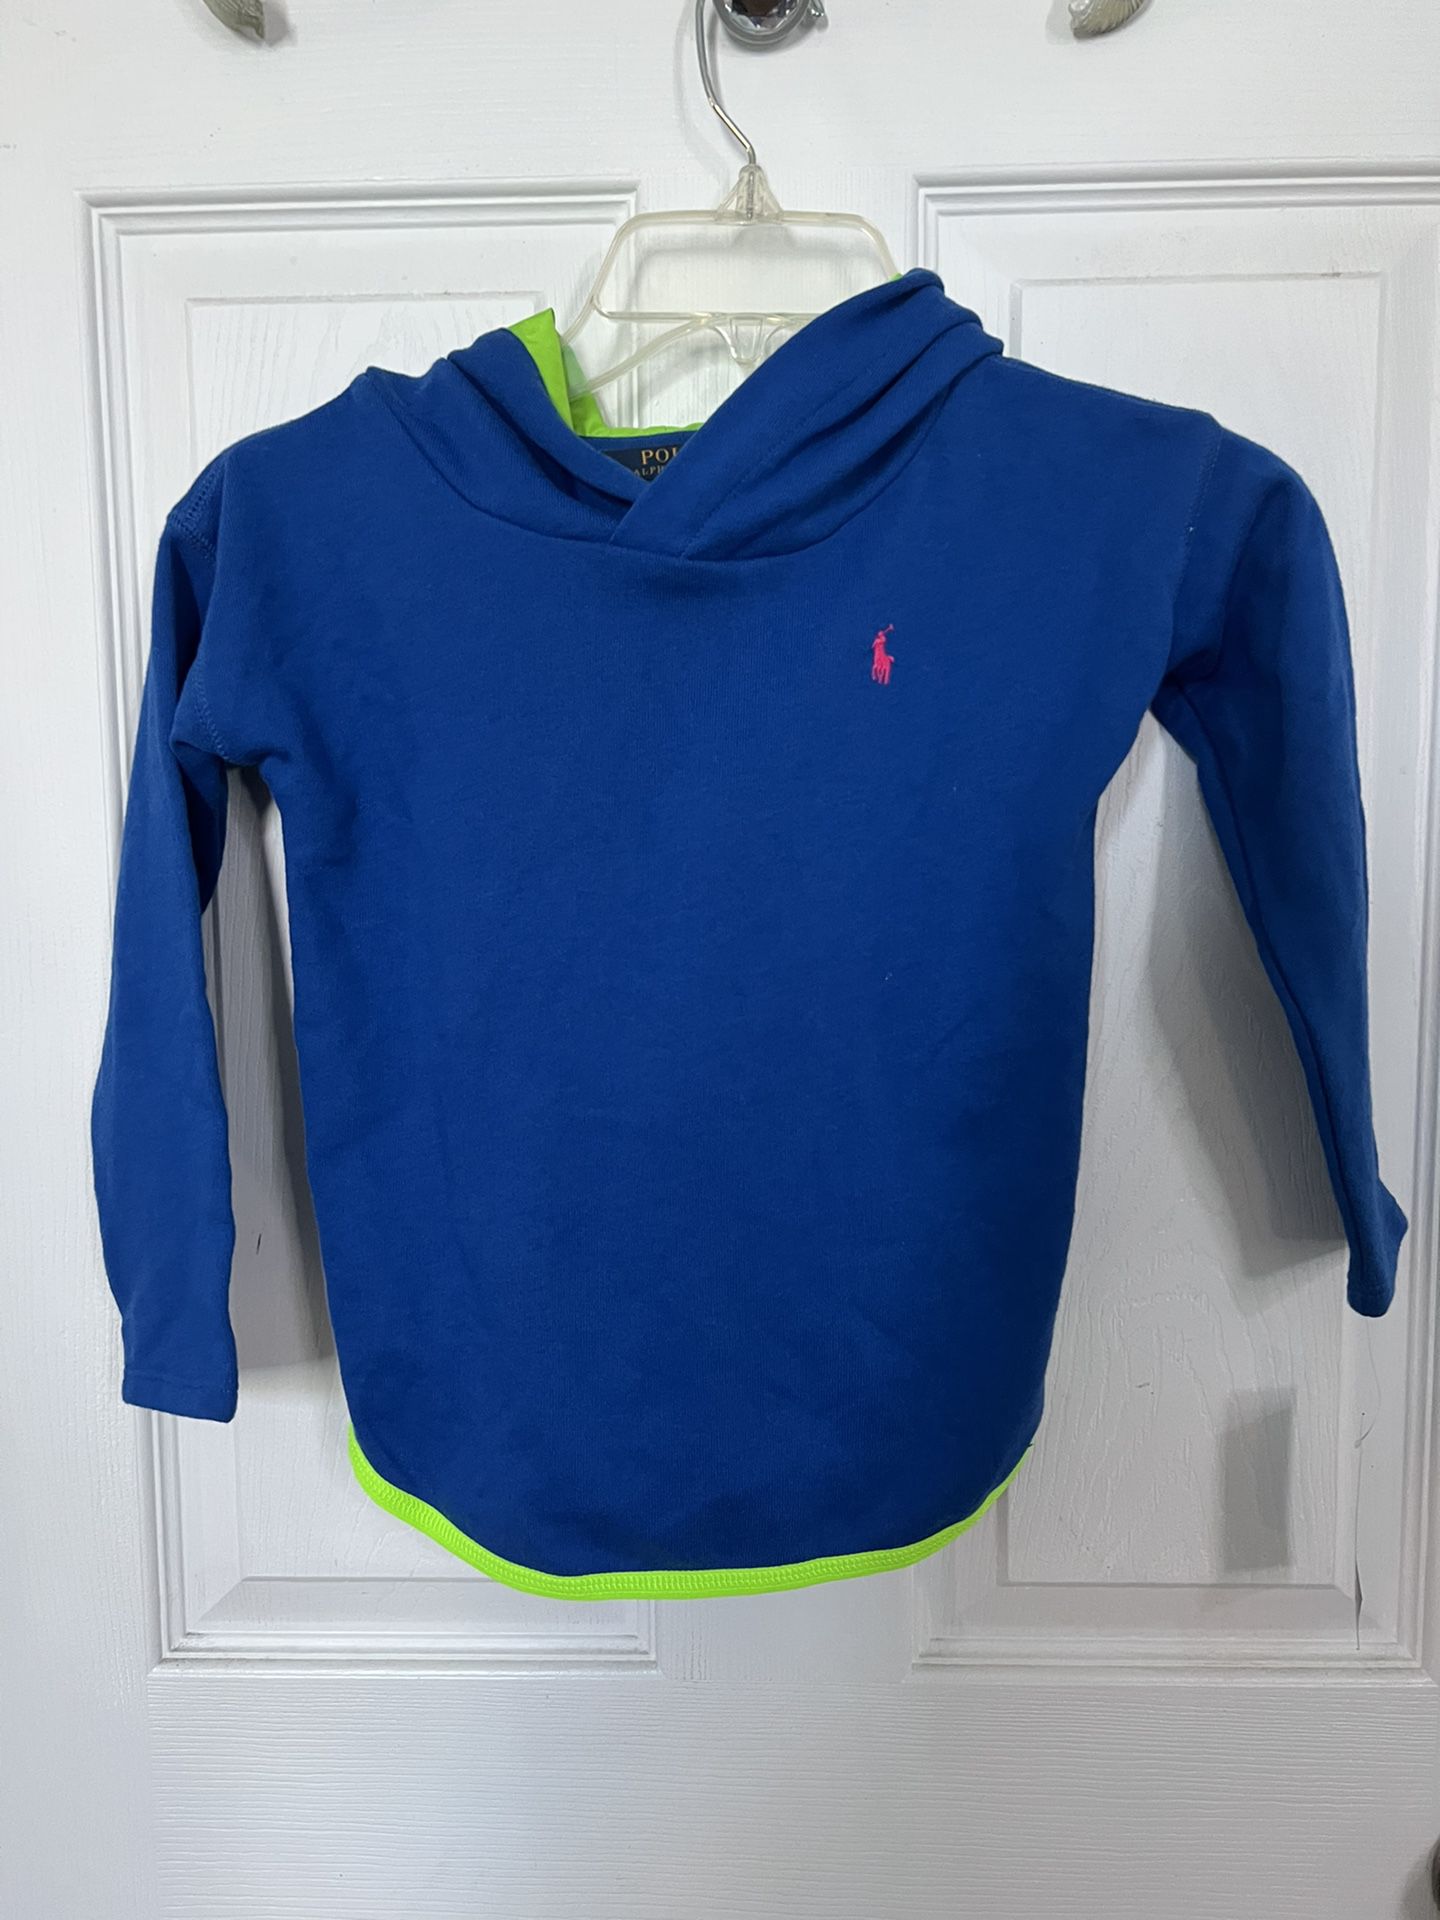 Ralph Lauren Sweatshirt Jacket Hoodie Blue Green Polo by Ralph Lauren Size 5